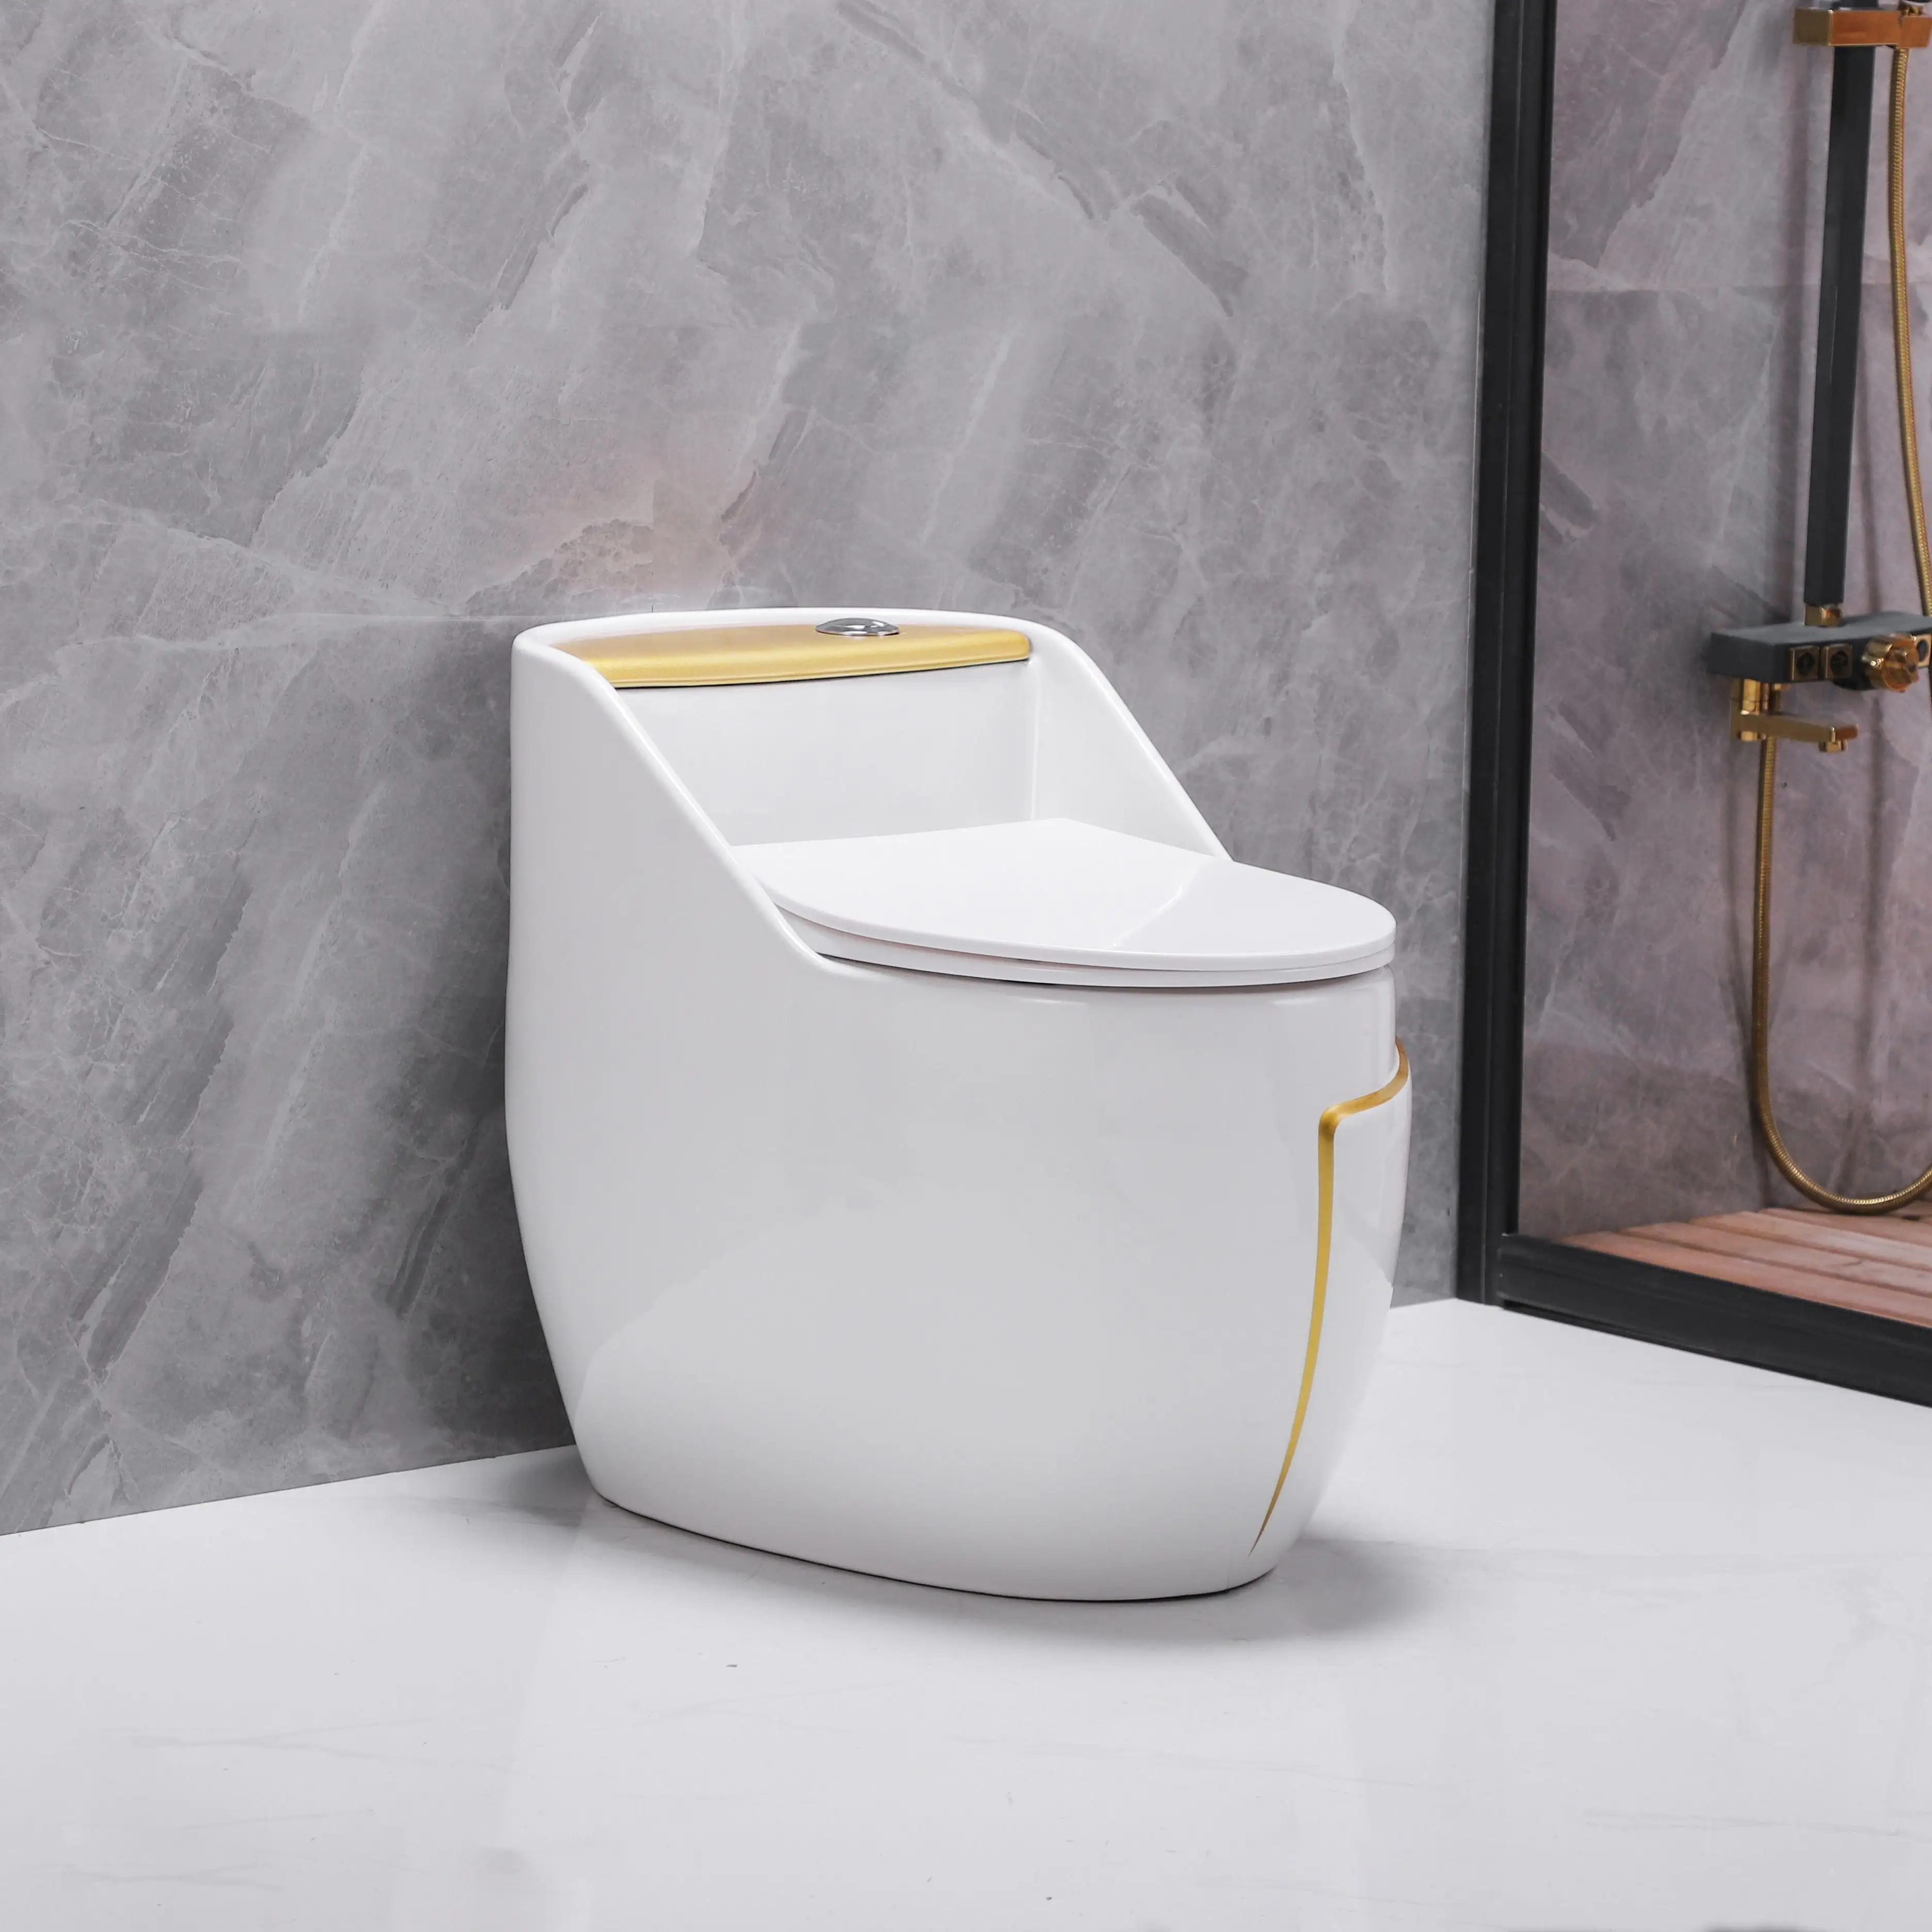 Короткая мини-стильная ванная комната с двойным смылом, мягкая ловушка для ловушки, американский стандарт, унитаз